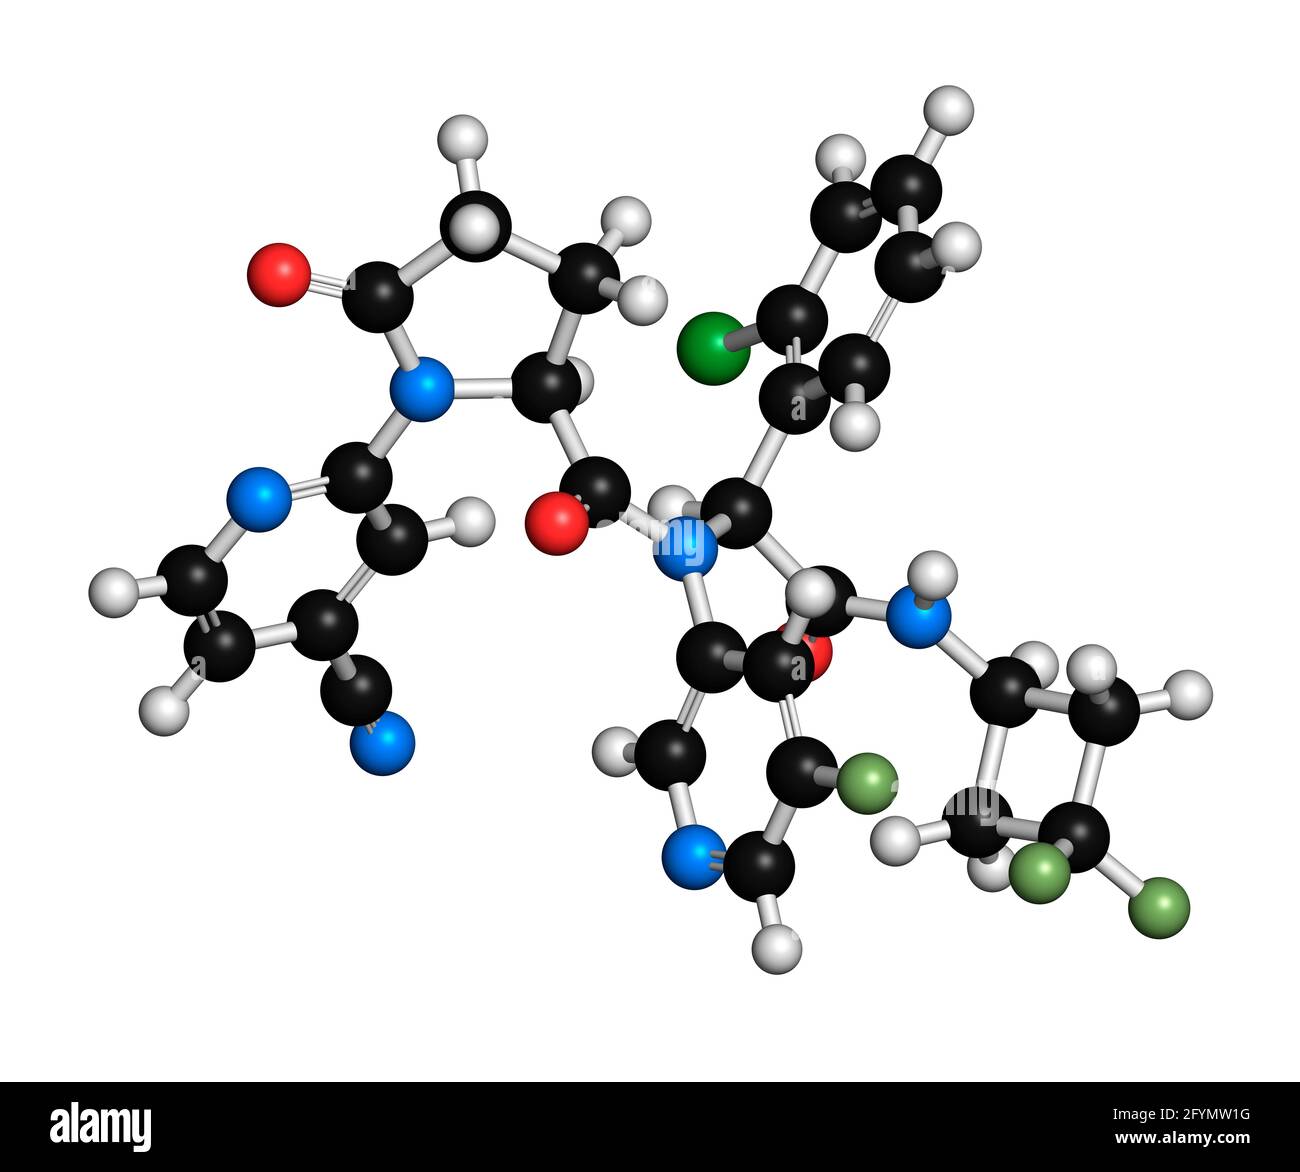 Ivosidenib, molecola di farmaco per il cancro, illustrazione Foto Stock